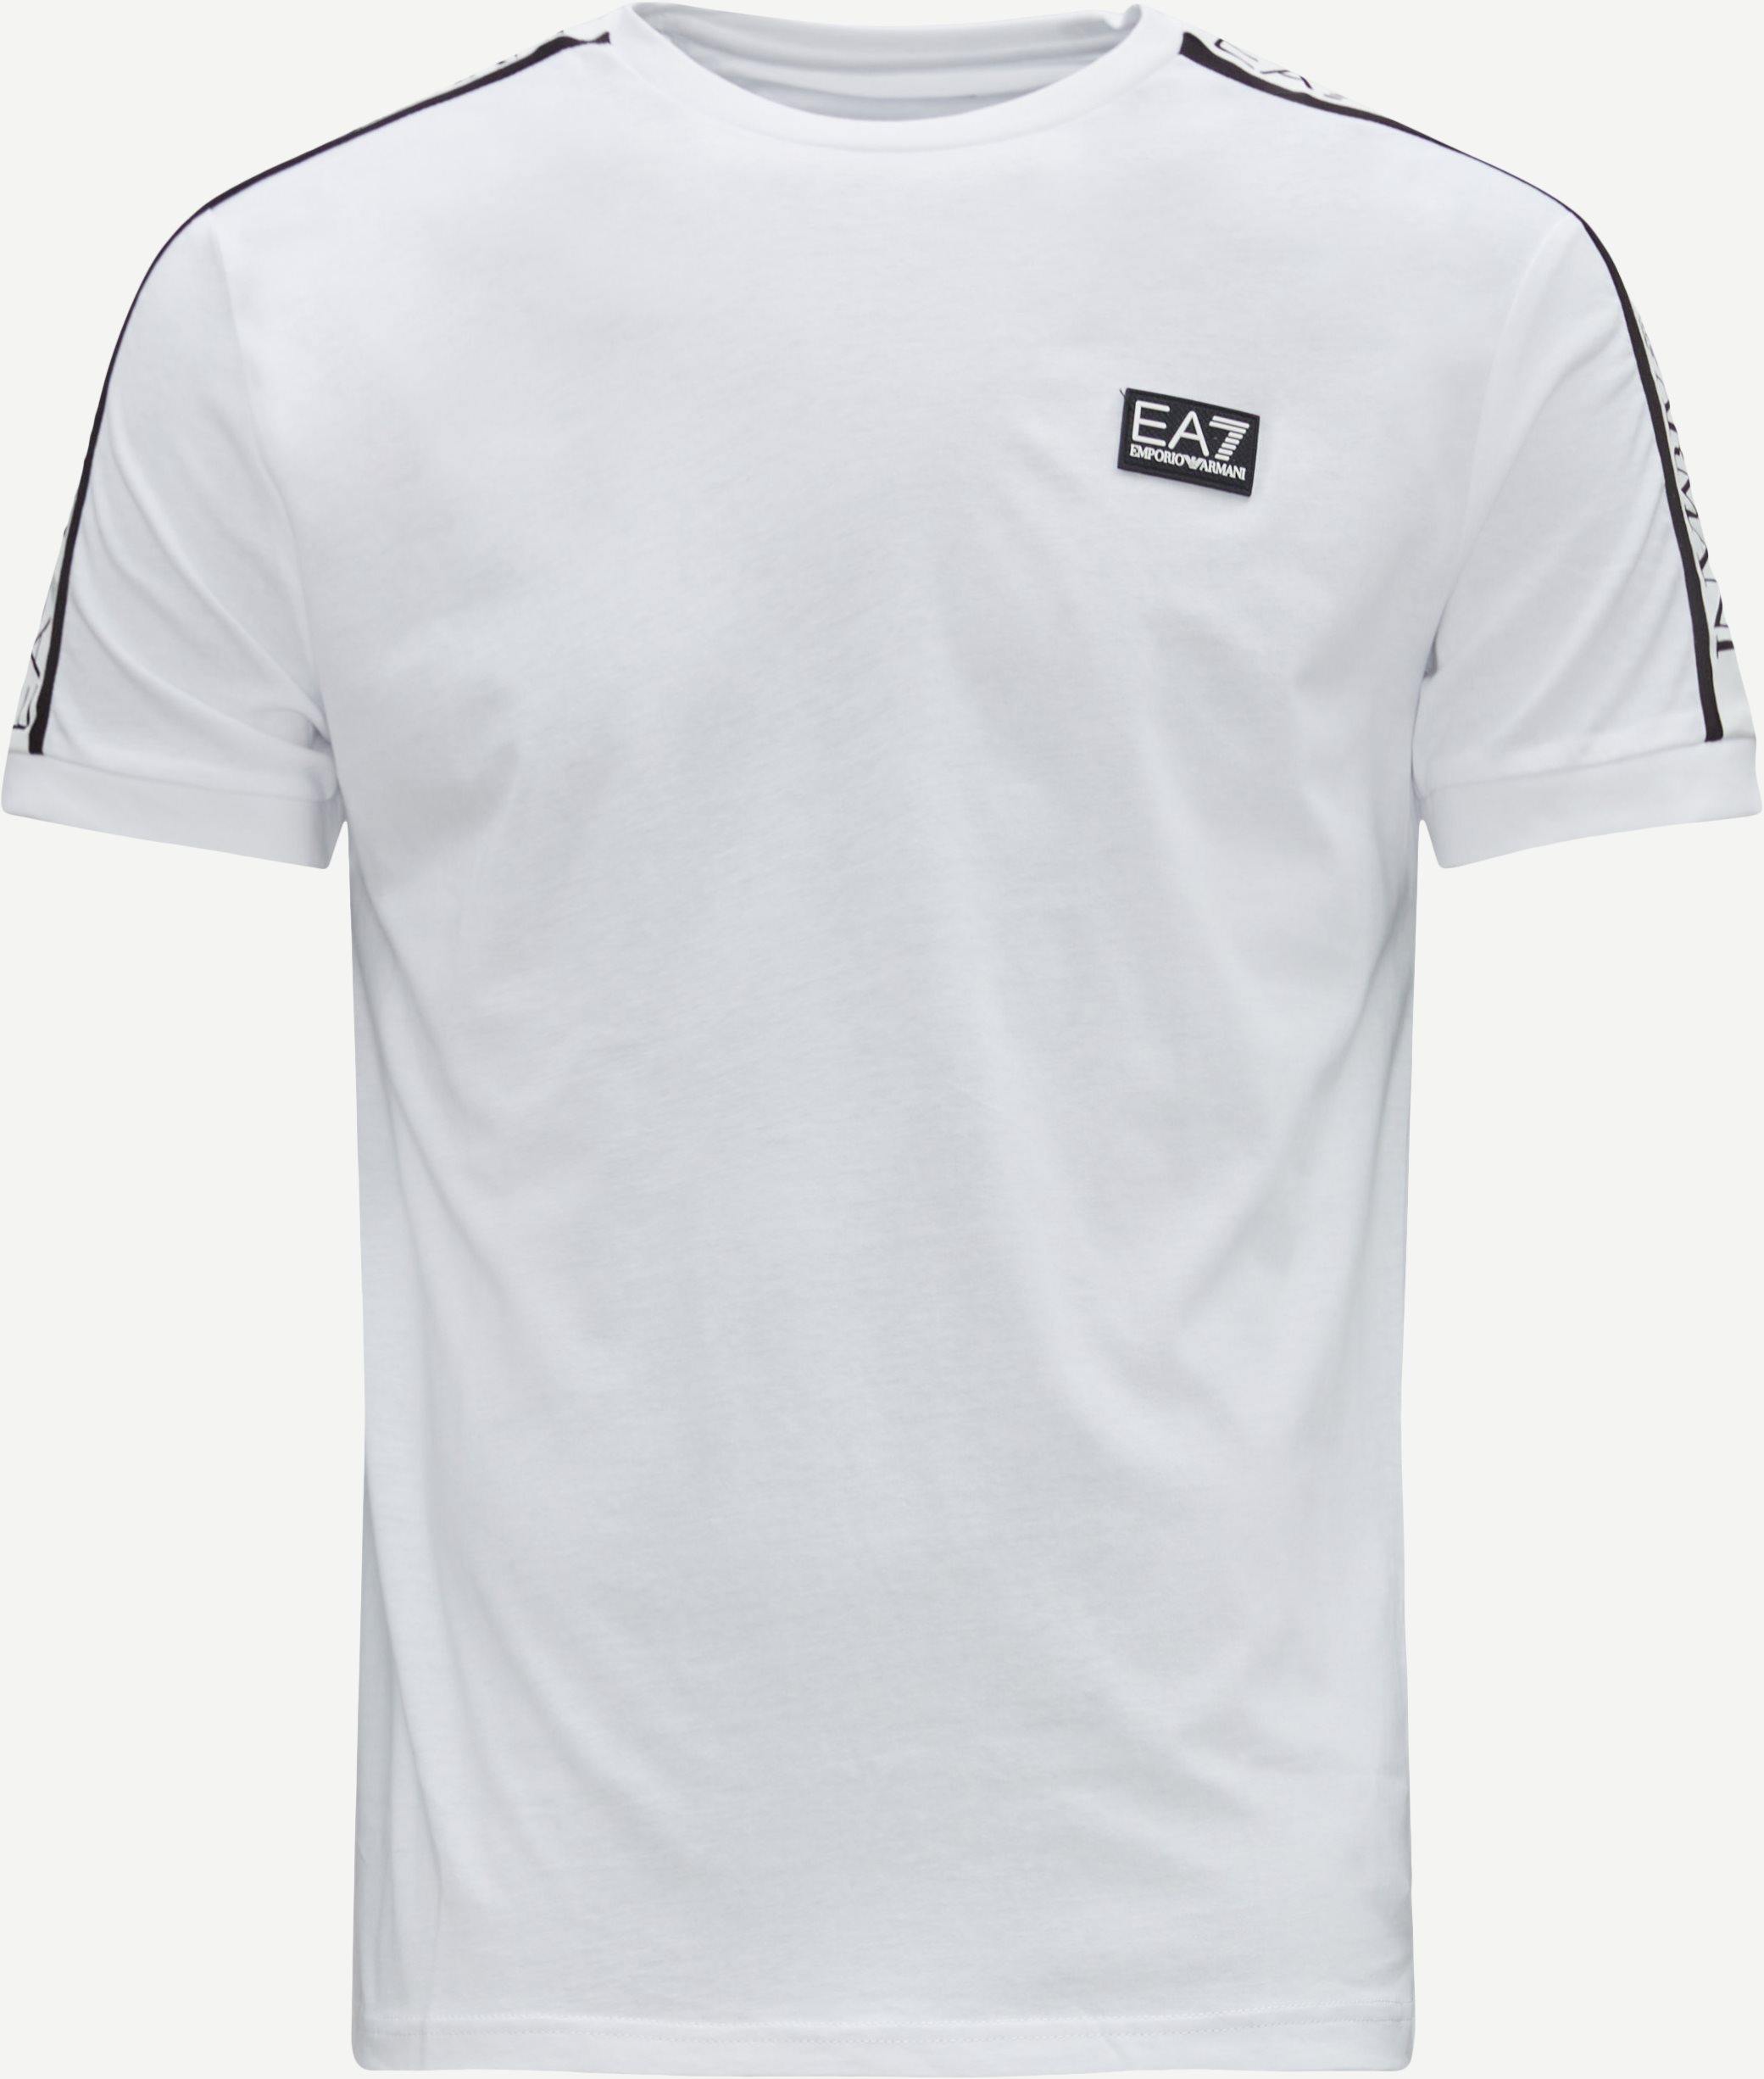 EA7 T-shirts PJ02Z-6LPT50 White